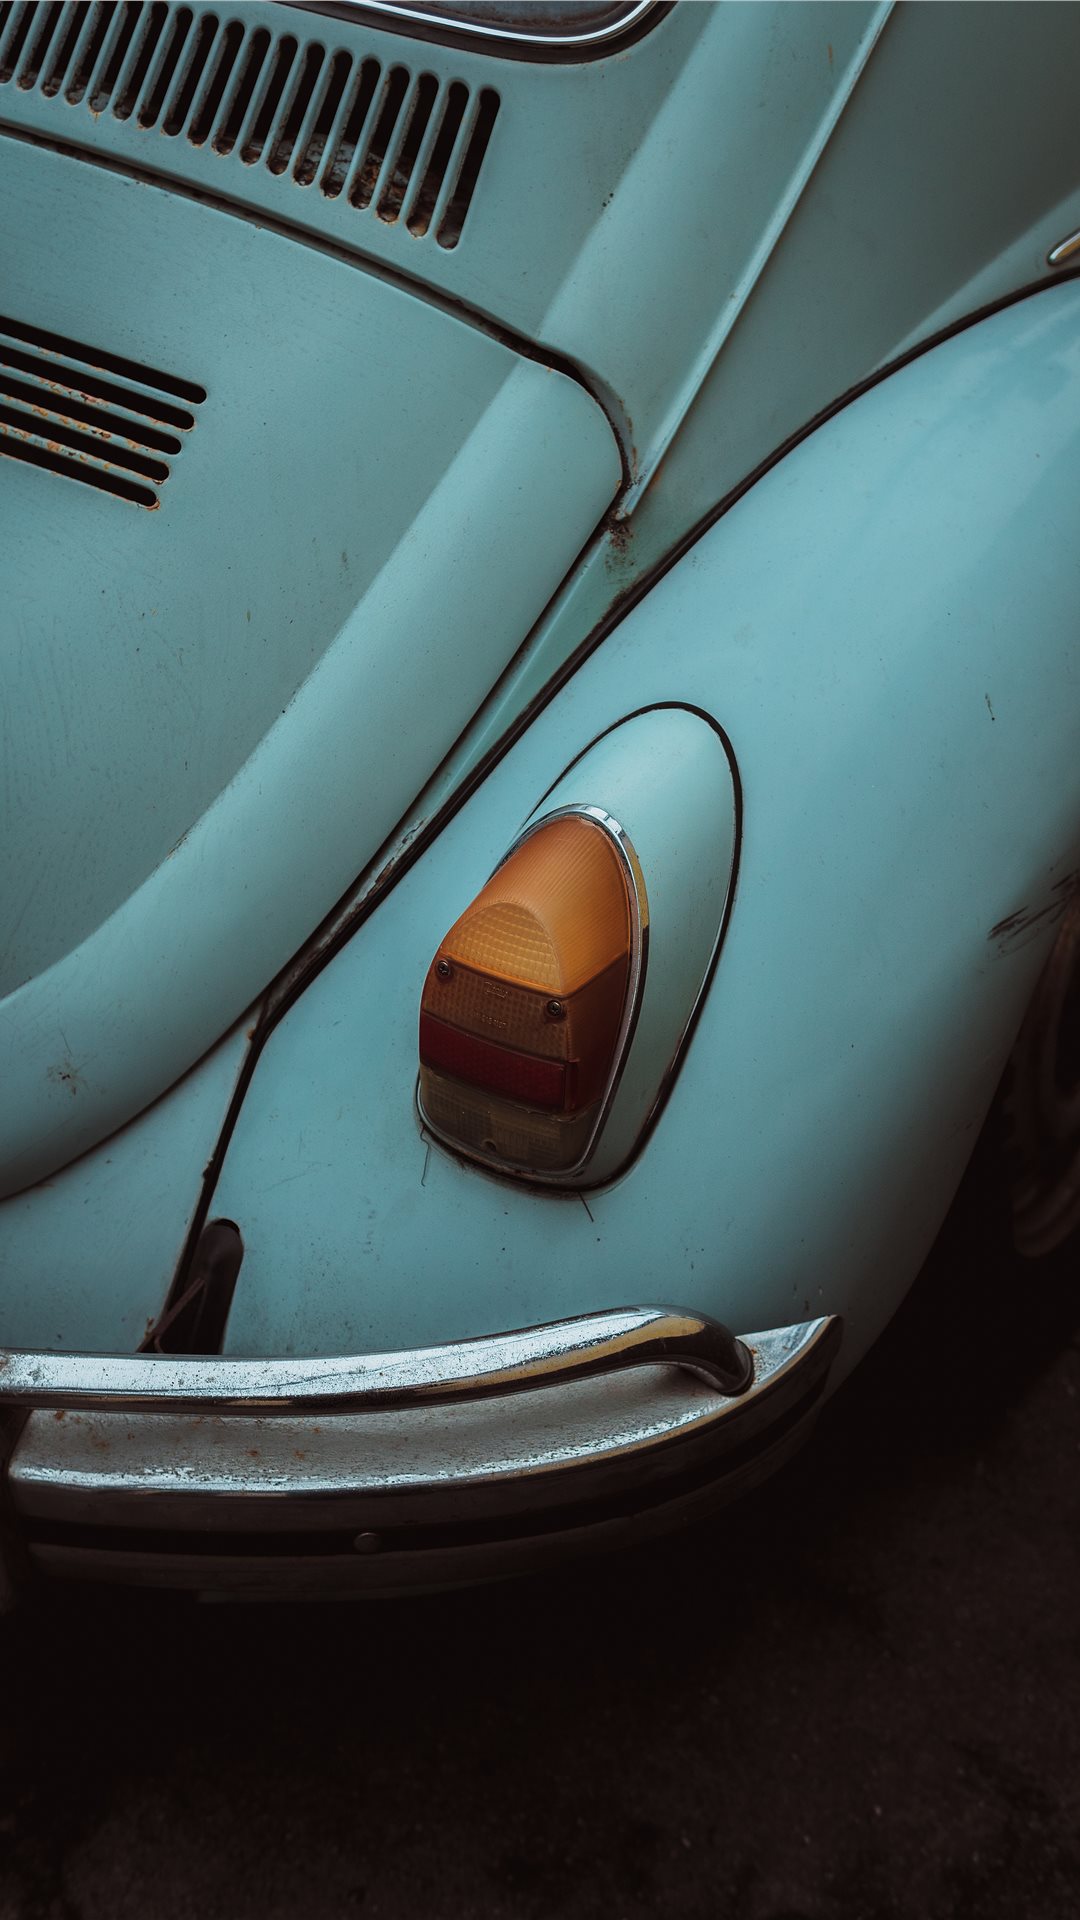 Volkswagen Beetle , HD Wallpaper & Backgrounds